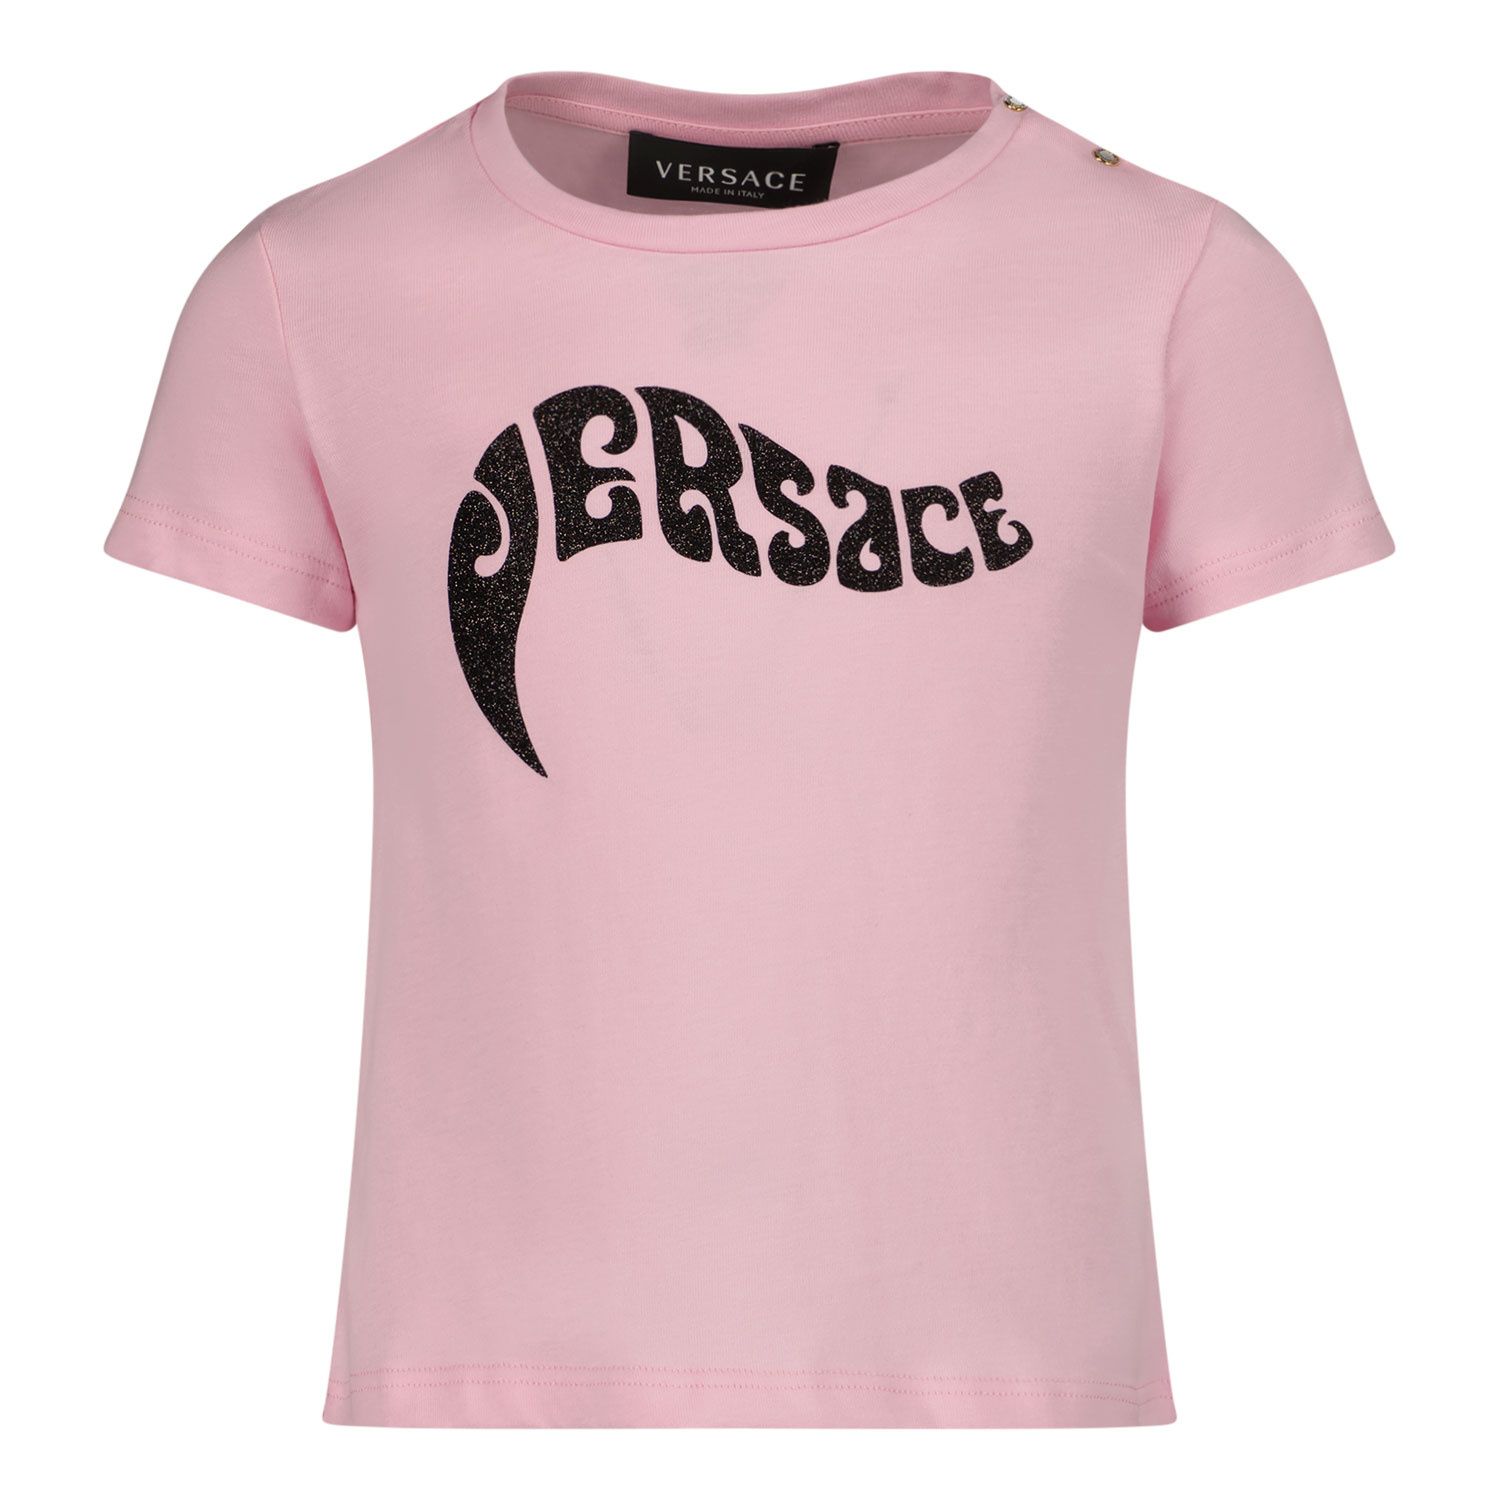 Afbeelding van Versace 1000152 1A02613 baby t-shirt licht roze